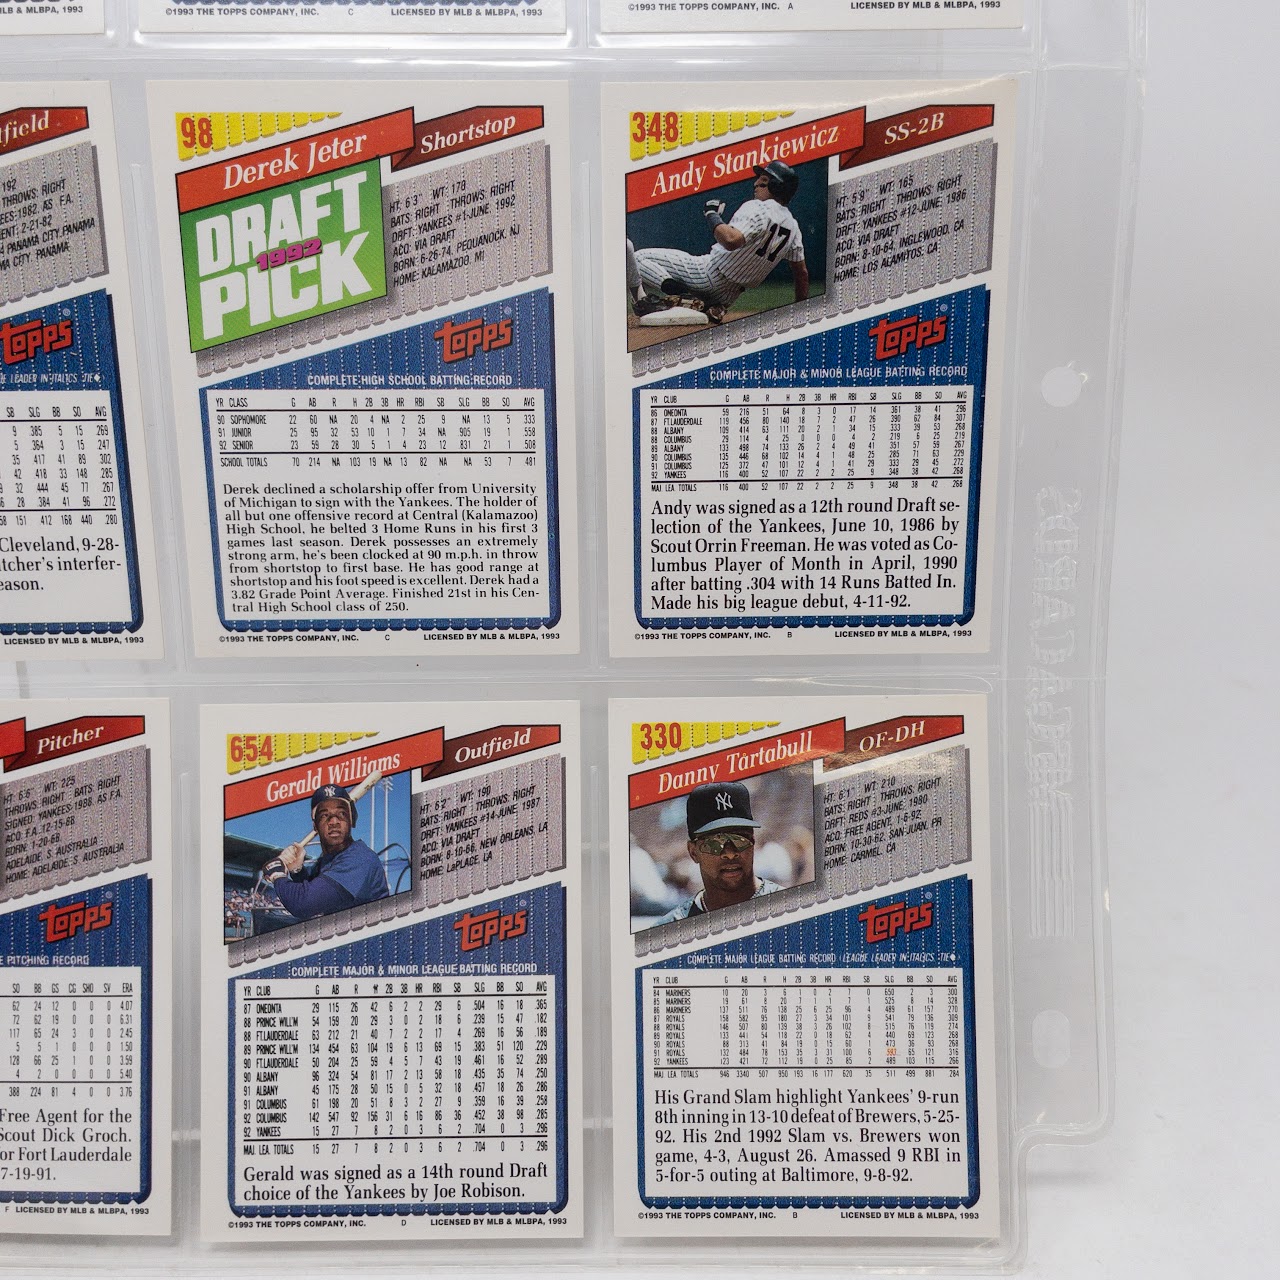 Derek Jeter 1992 Draft Pick Topps Baseball Card